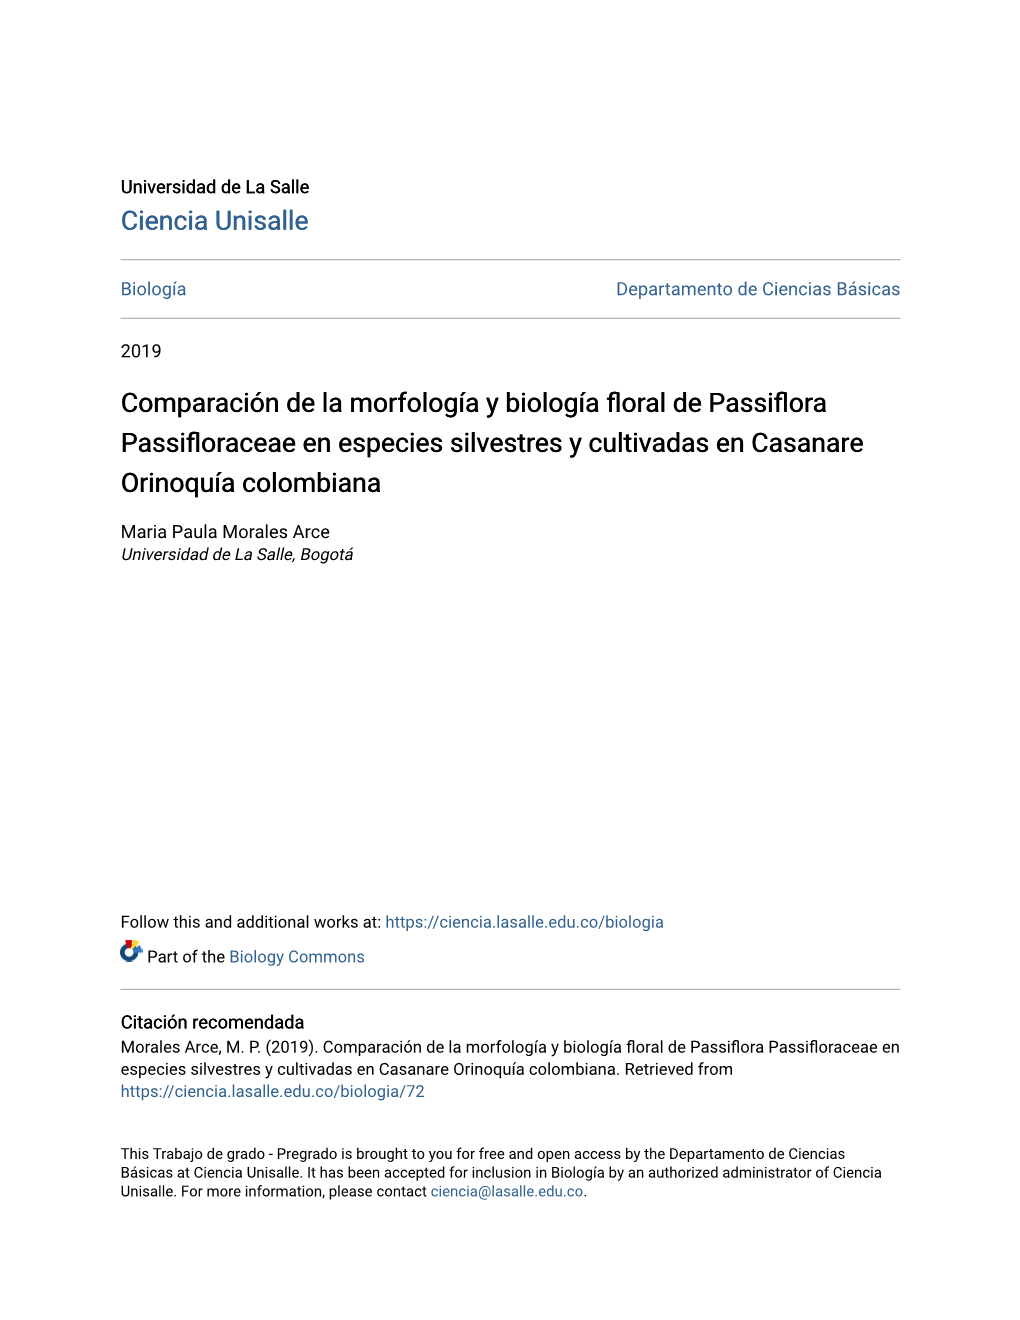 Comparación De La Morfología Y Biología Floral De Passiflora Passifloraceae En Especies Silvestres Y Cultivadas En Casanare Orinoquía Colombiana